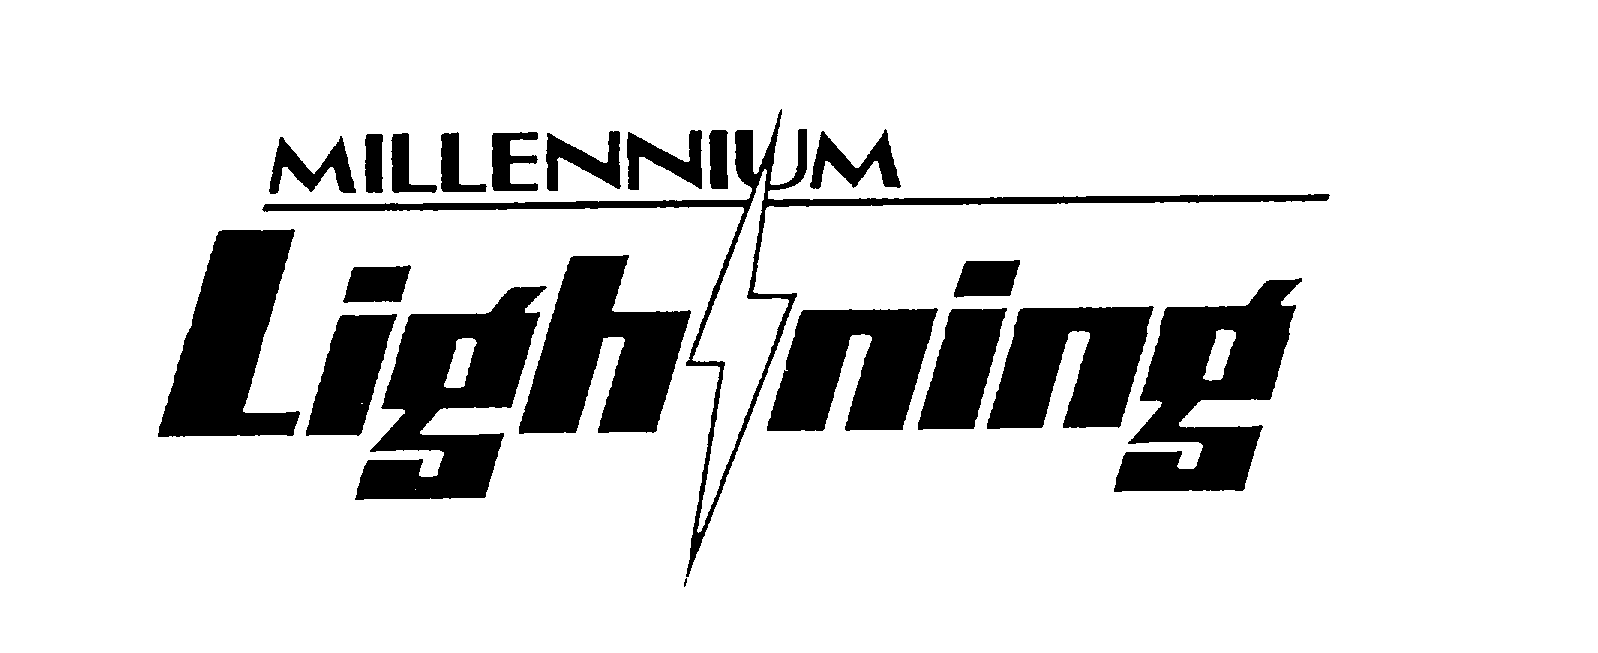 Trademark Logo MILLENNIUM LIGHTNING